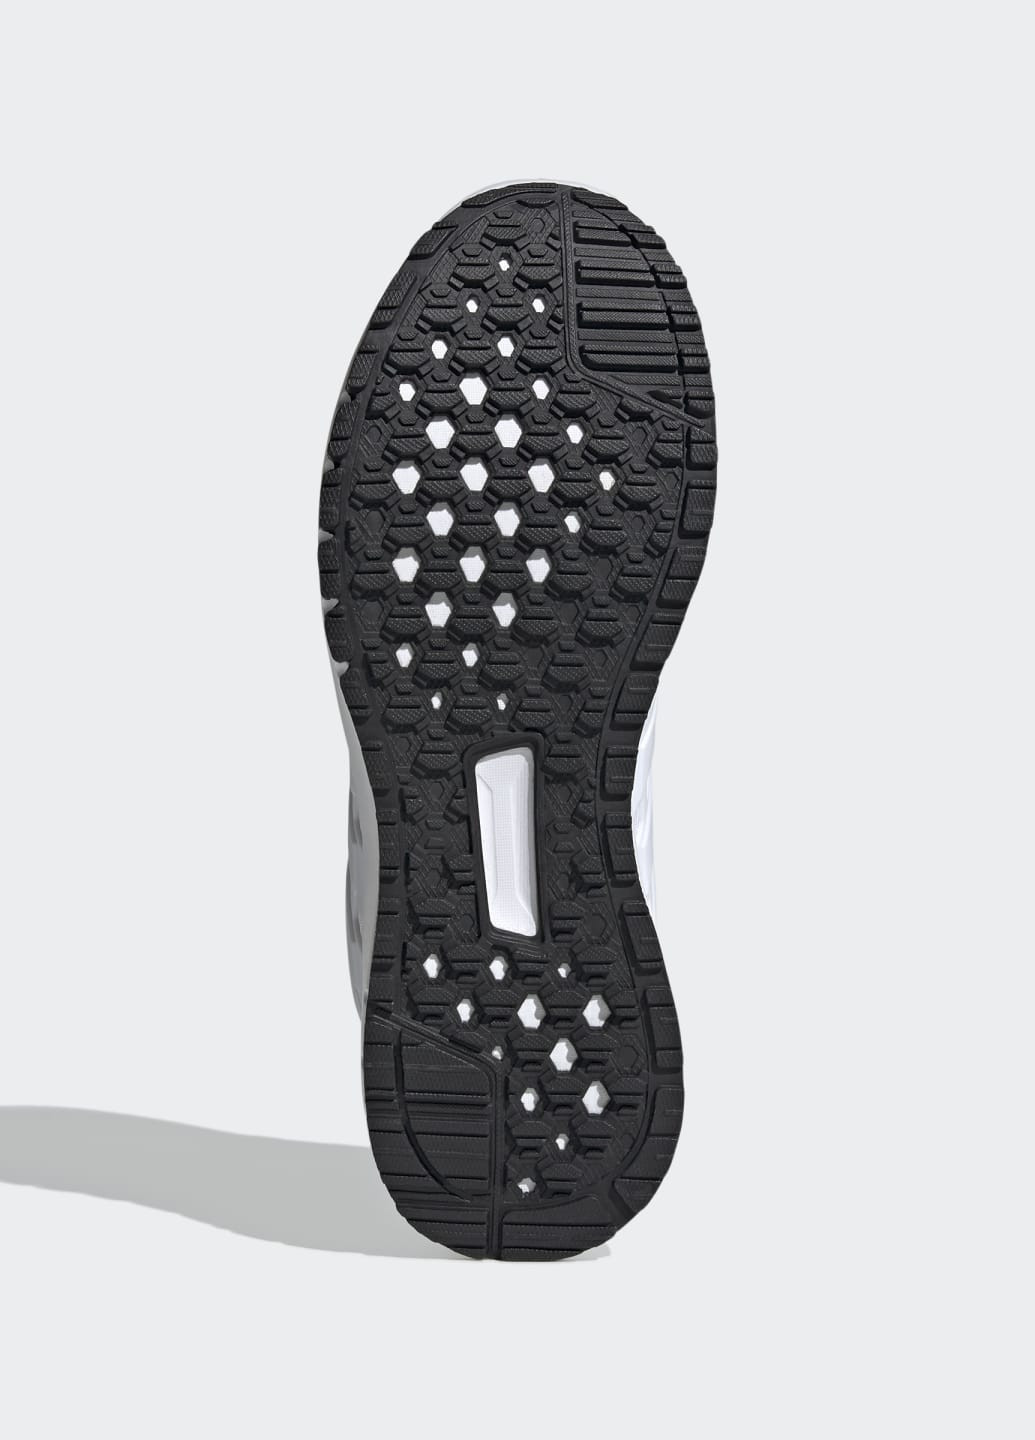 Белые всесезонные кроссовки для бега ultimashow adidas